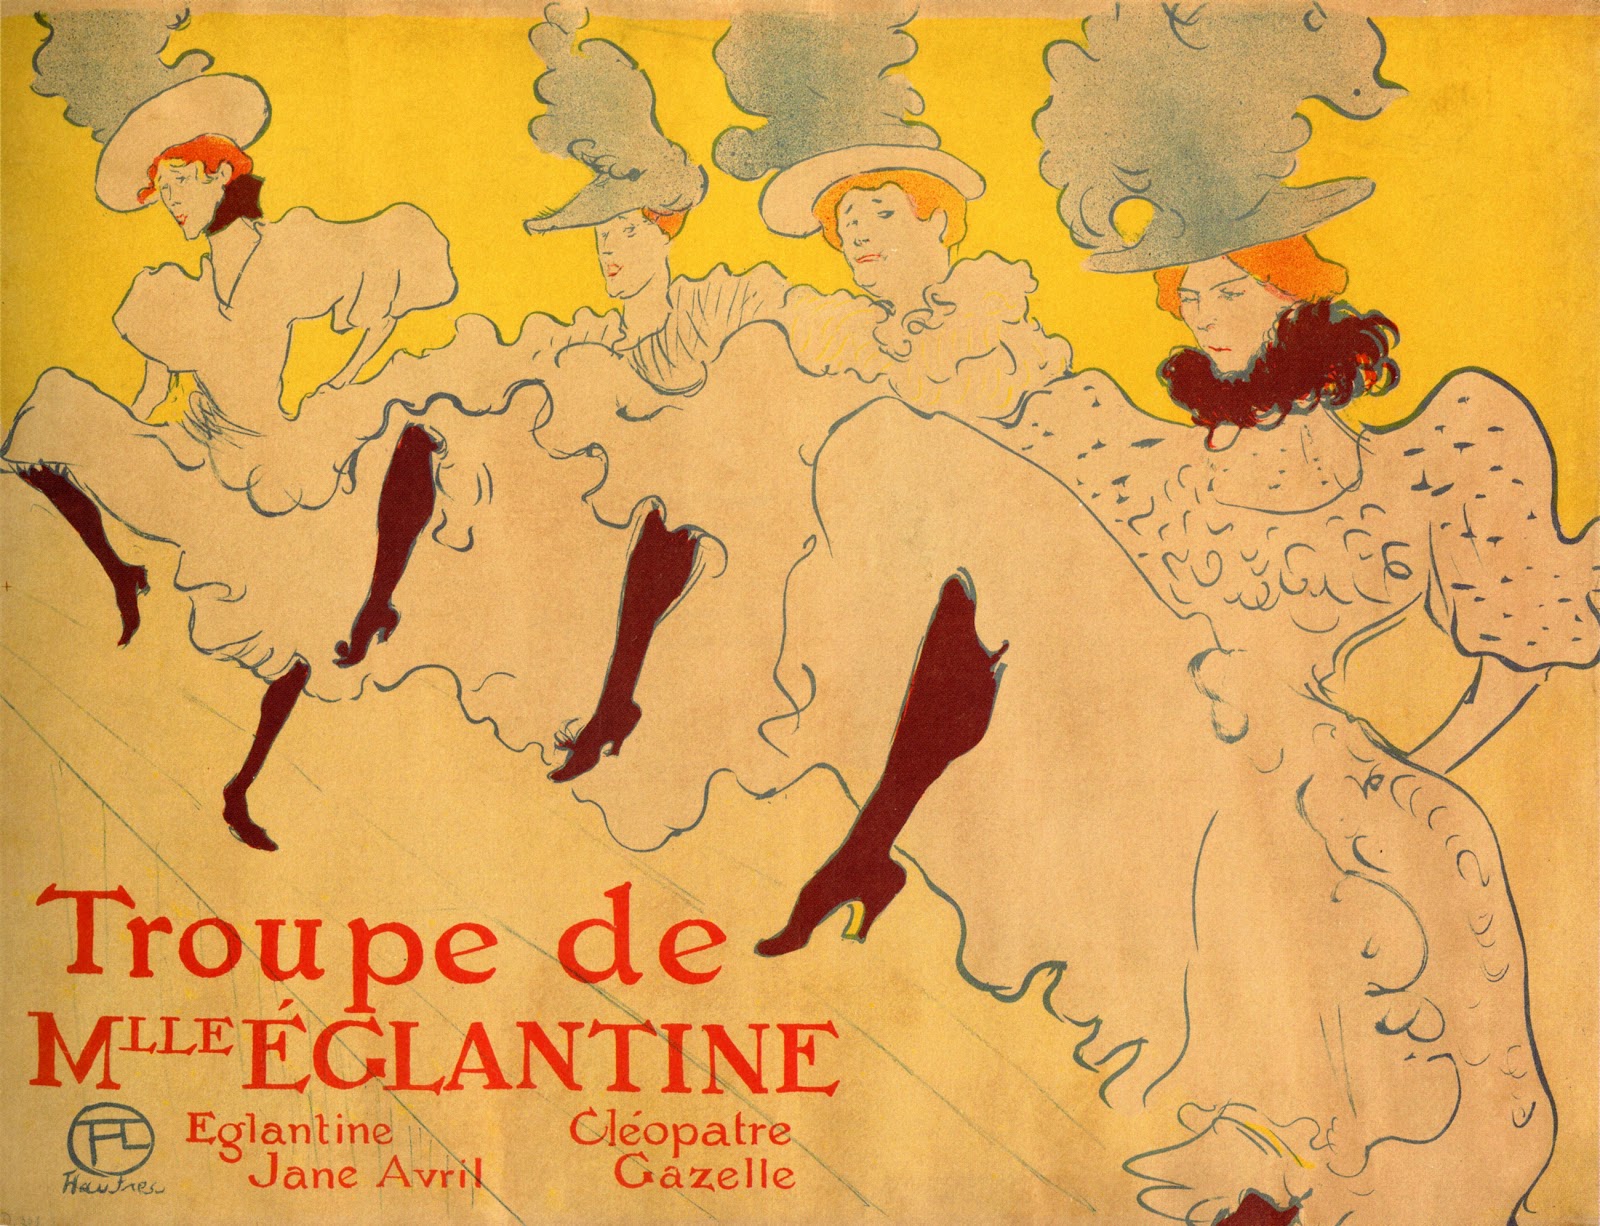 Henri+de+Toulouse+Lautrec-1864-1901 (80).jpg